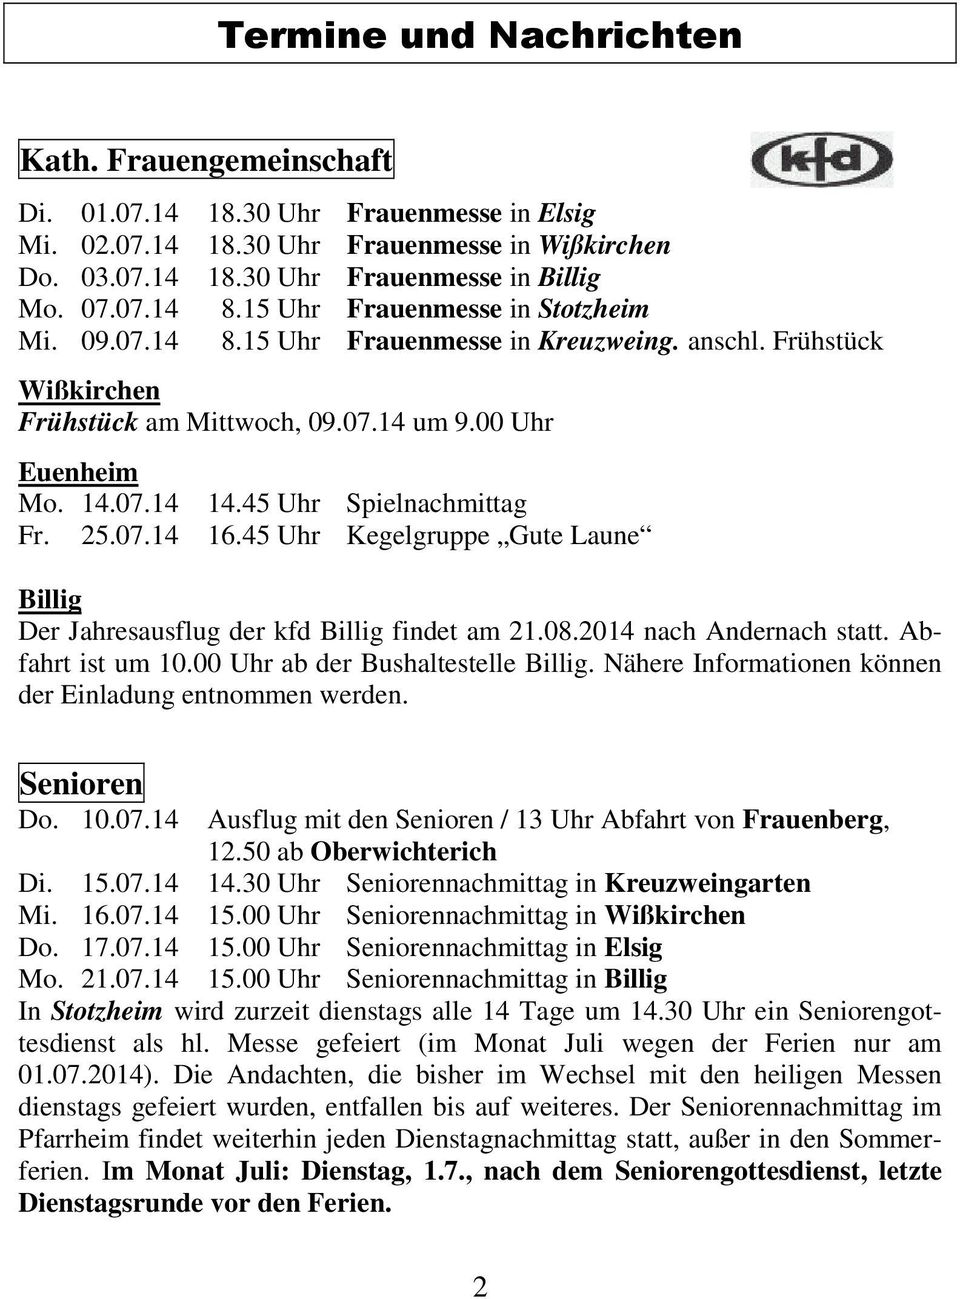 45 Uhr Spielnachmittag Fr. 25.07.14 16.45 Uhr Kegelgruppe Gute Laune Billig Der Jahresausflug der kfd Billig findet am 21.08.2014 nach Andernach statt. Abfahrt ist um 10.